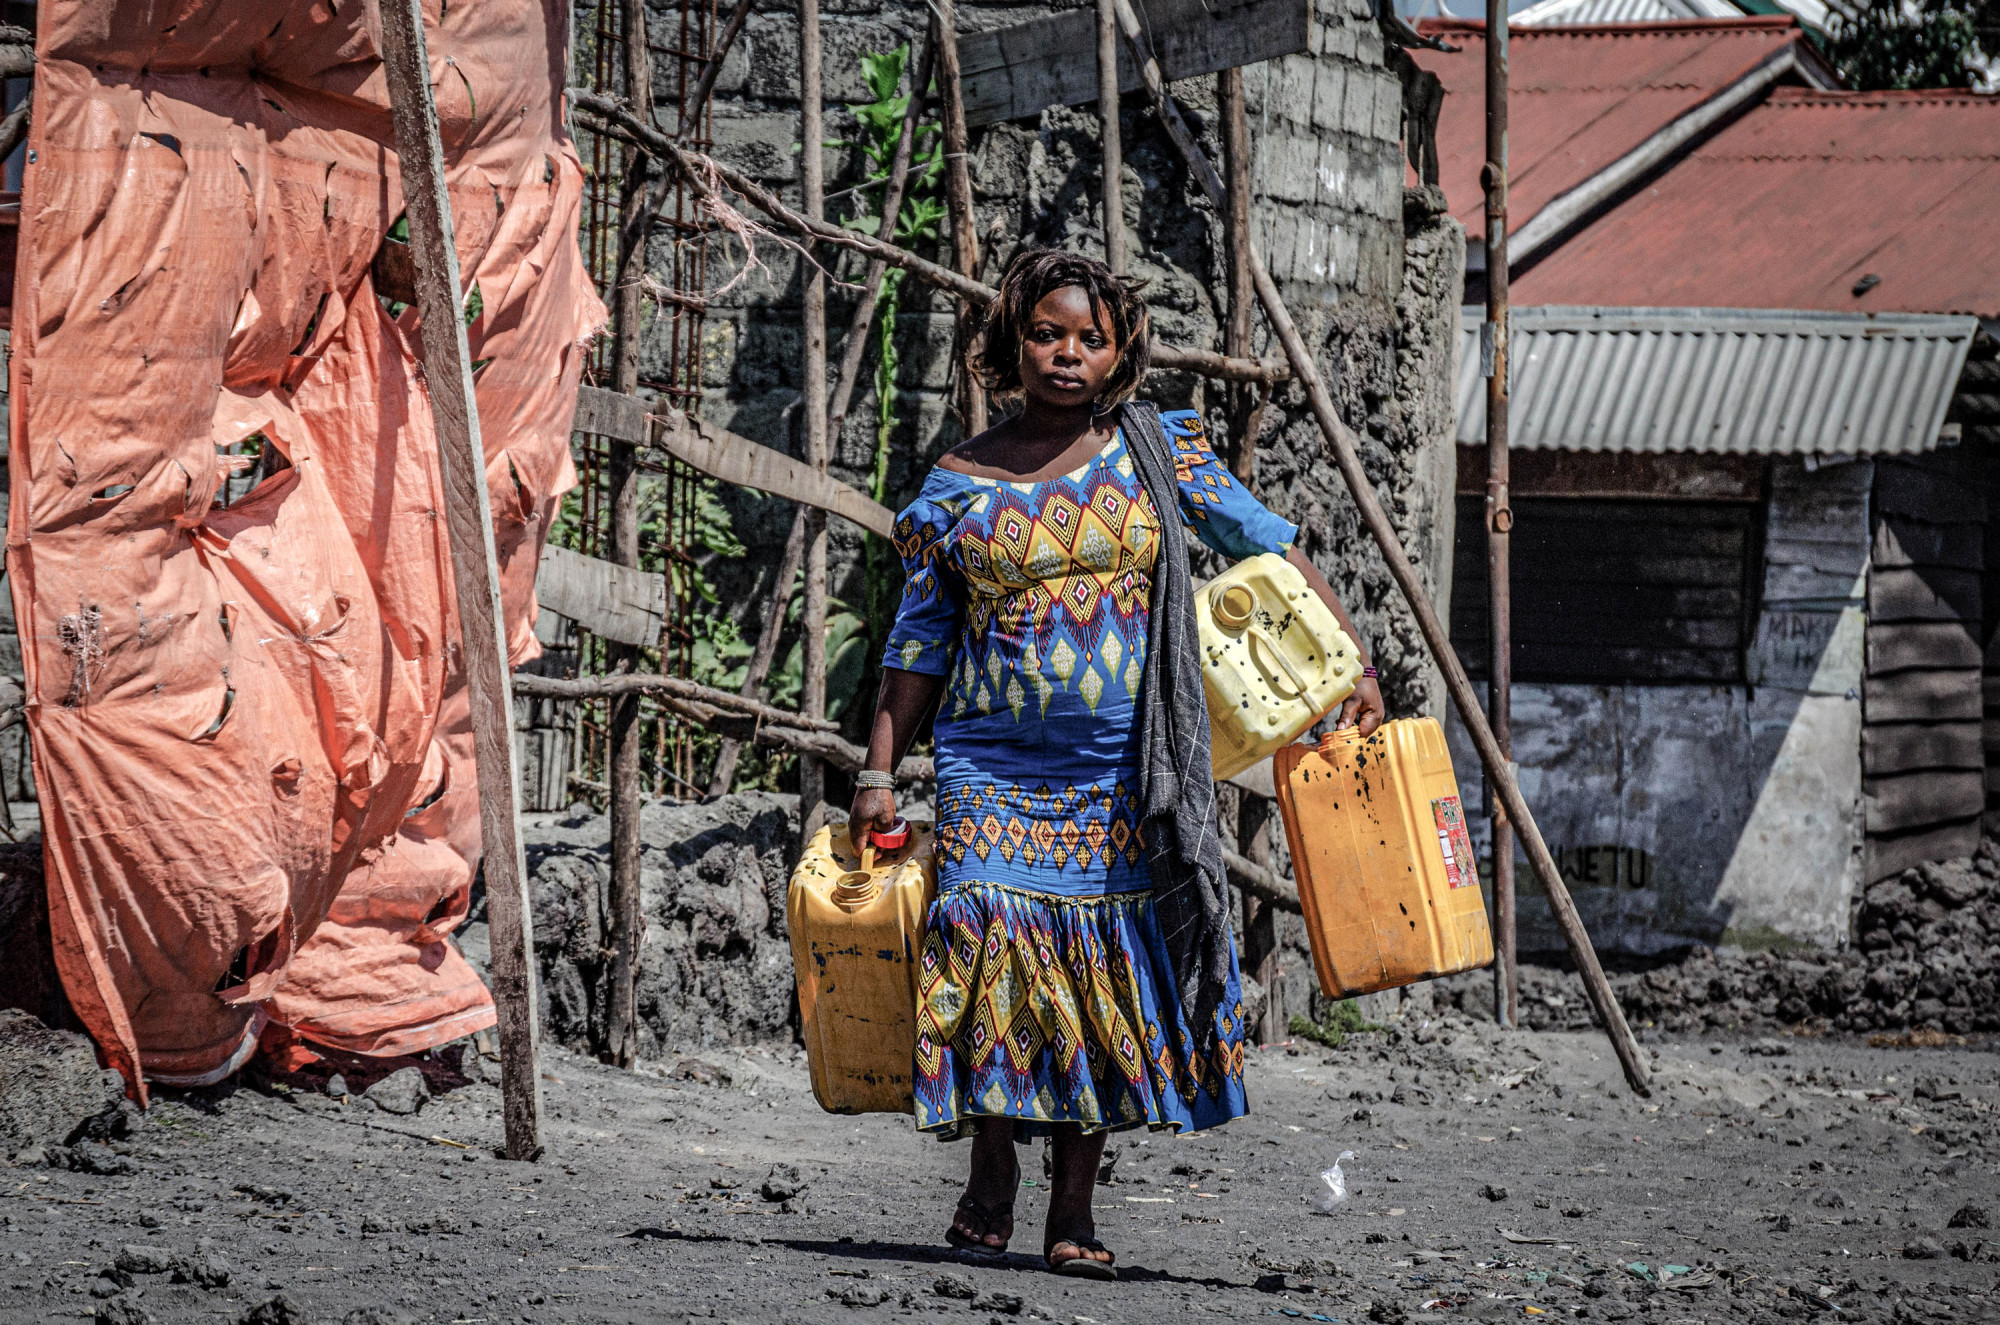 Goma, RDC, mai 2020. Une femme transporte des jerricans d’eau dans une rue du chef-lieu du Nord-Kivu. Au début de l’épidémie de coronavirus, la régie publique Regideso a promis un accès gratuit à l’eau, mais vu le peu de gens raccordés au réseau, par ailleurs très défectueux, le manque d’eau a entravé le respect des normes sanitaires et des mesures d’hygiène et a suscité de nombreuses manifestations dans la ville, étalée sur les rives du lac Kivu. © Arlette Bashizi pour la Fondation Carmignac